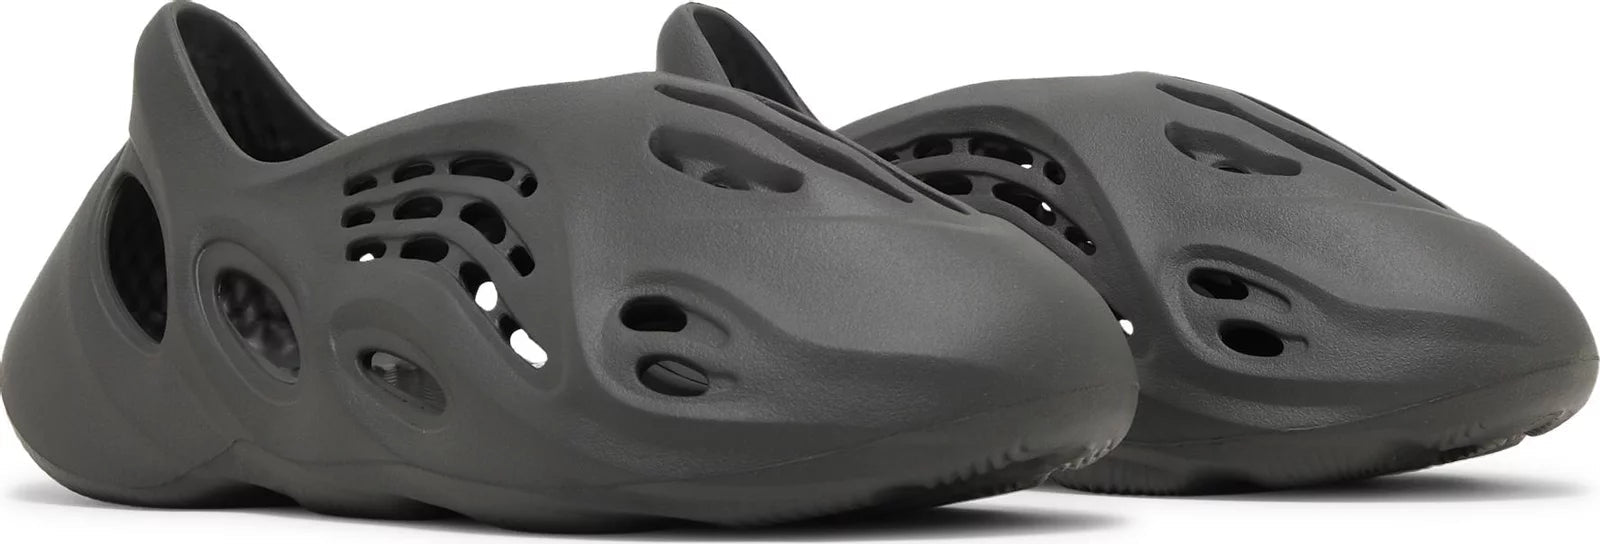 Yeezy Foam RNR (Runner) Carbon - Sneakersbe Sneakers Sale Online